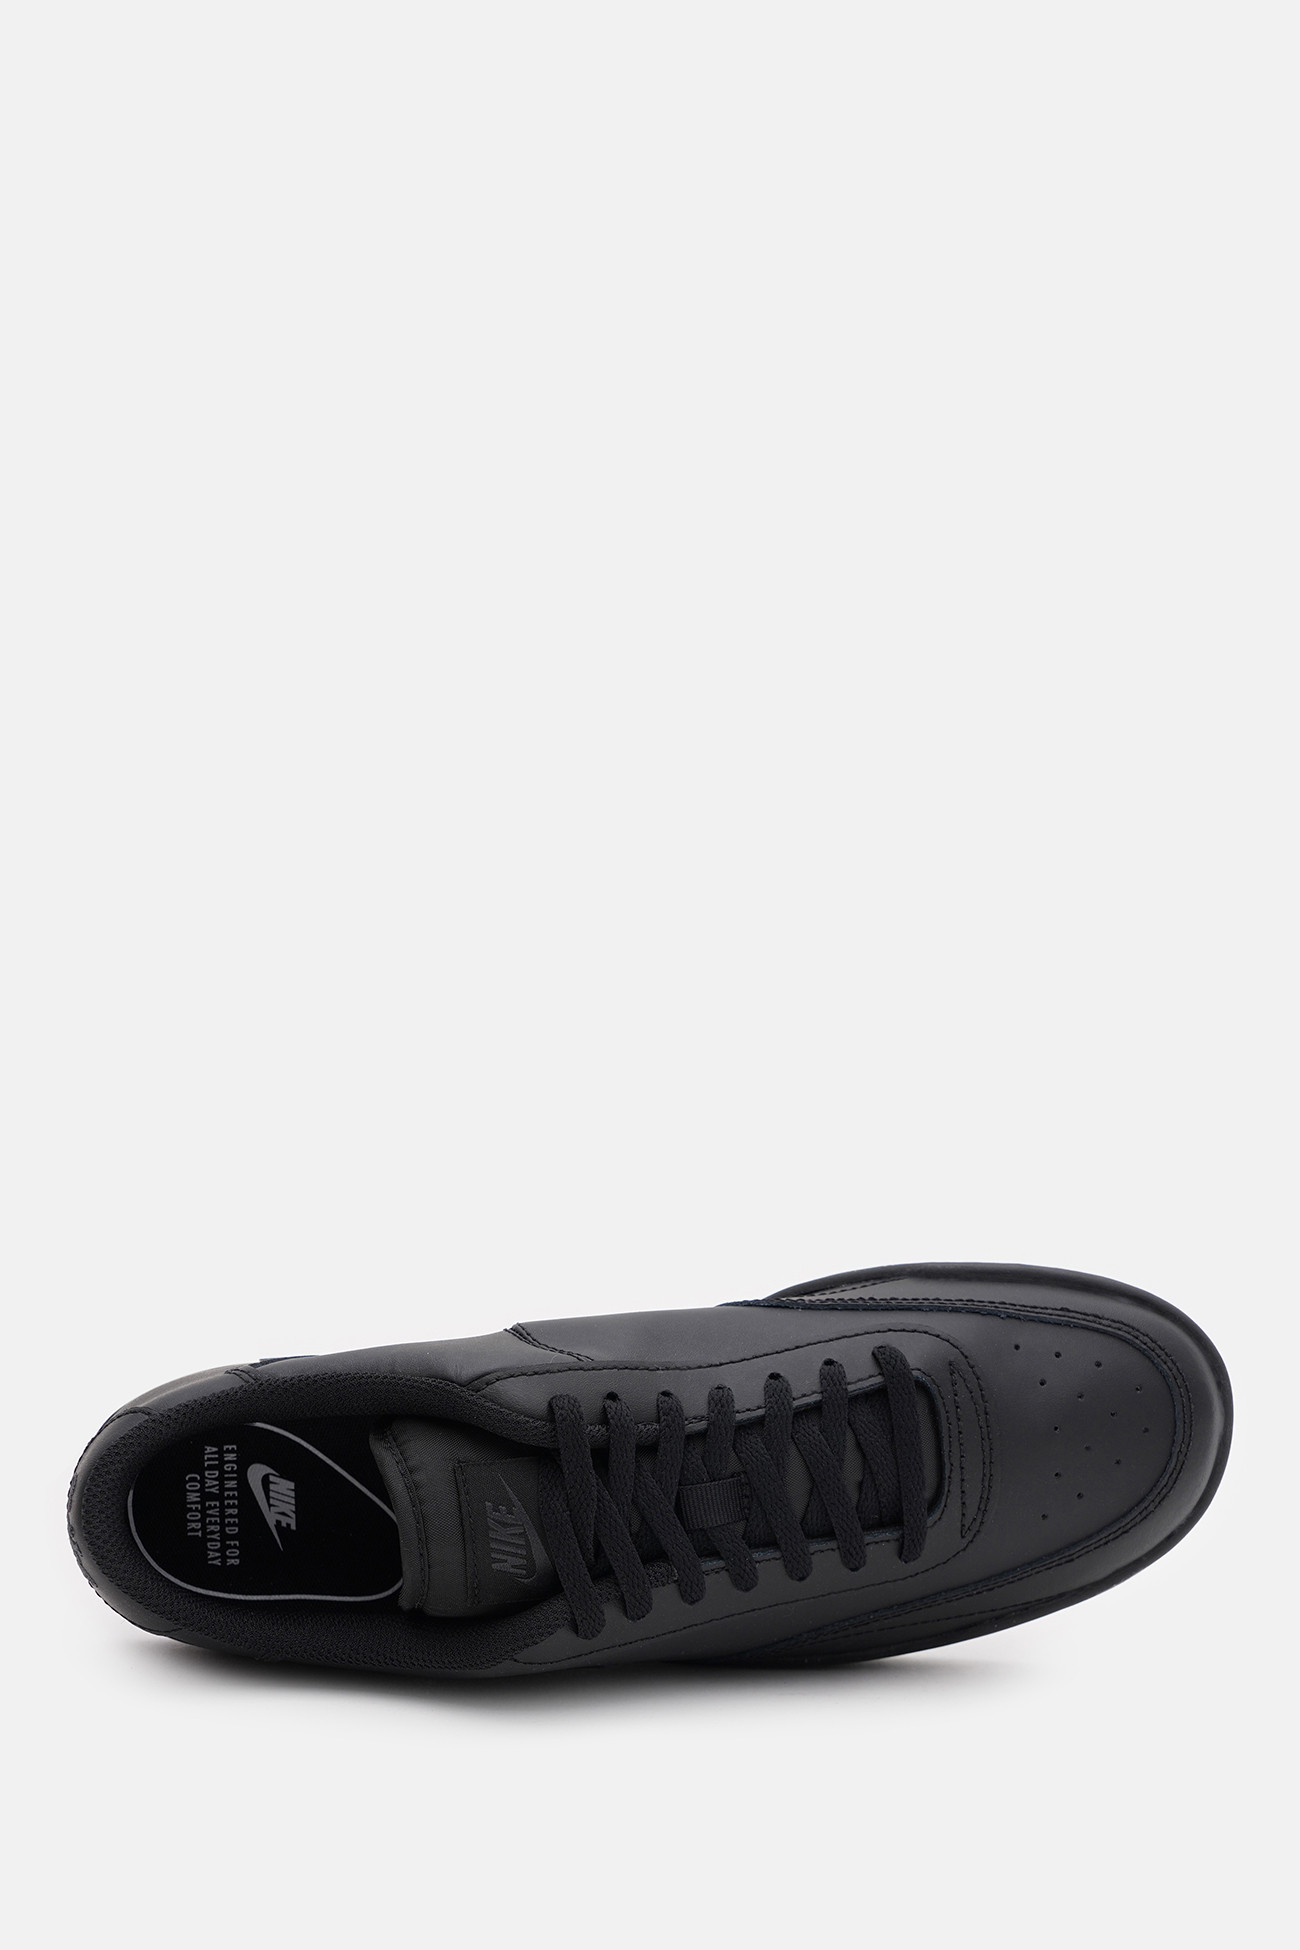 Кроссовки мужские Nike NIKE COURT VINTAGE черные CJ1679-001 изображение 4